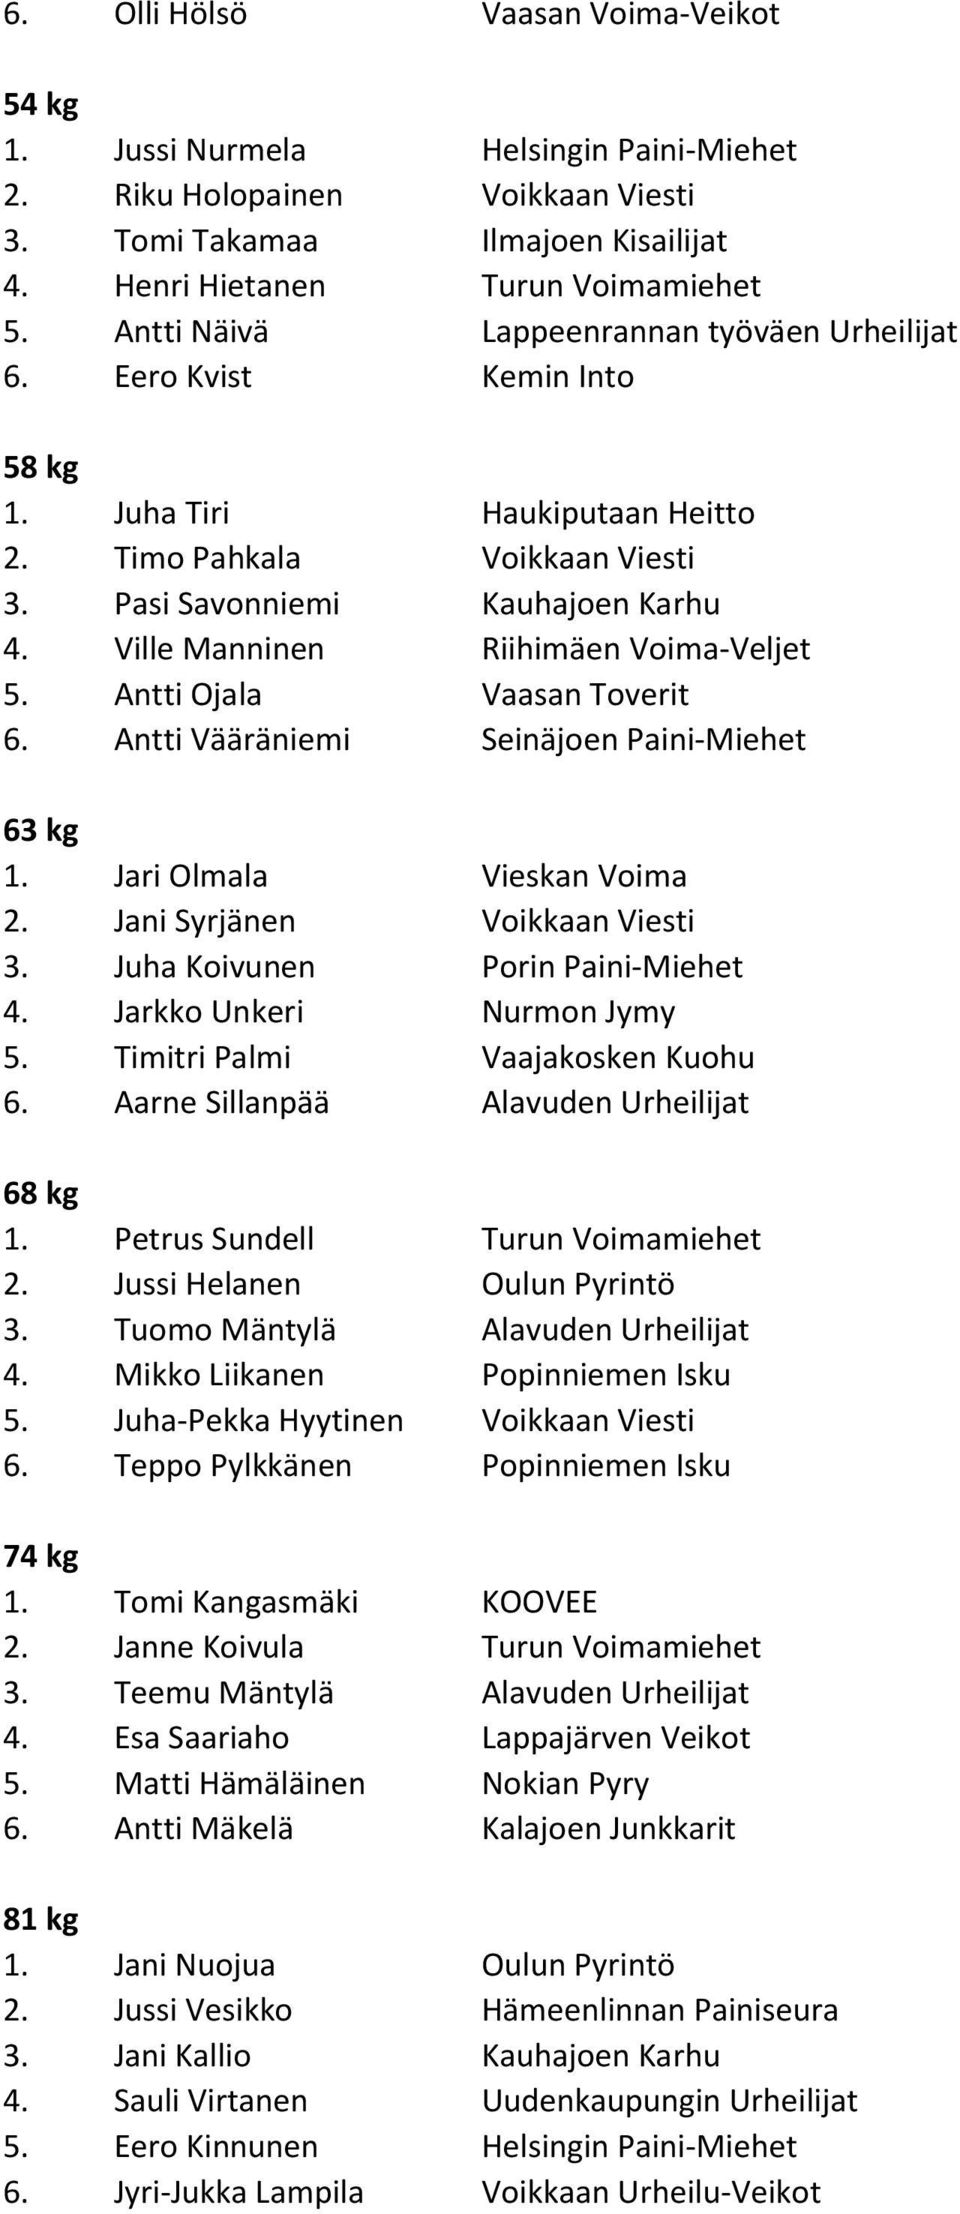 Ville Manninen Riihimäen Voima-Veljet 5. Antti Ojala Vaasan Toverit 6. Antti Vääräniemi Seinäjoen Paini-Miehet 63 kg 1. Jari Olmala Vieskan Voima 2. Jani Syrjänen Voikkaan Viesti 3.